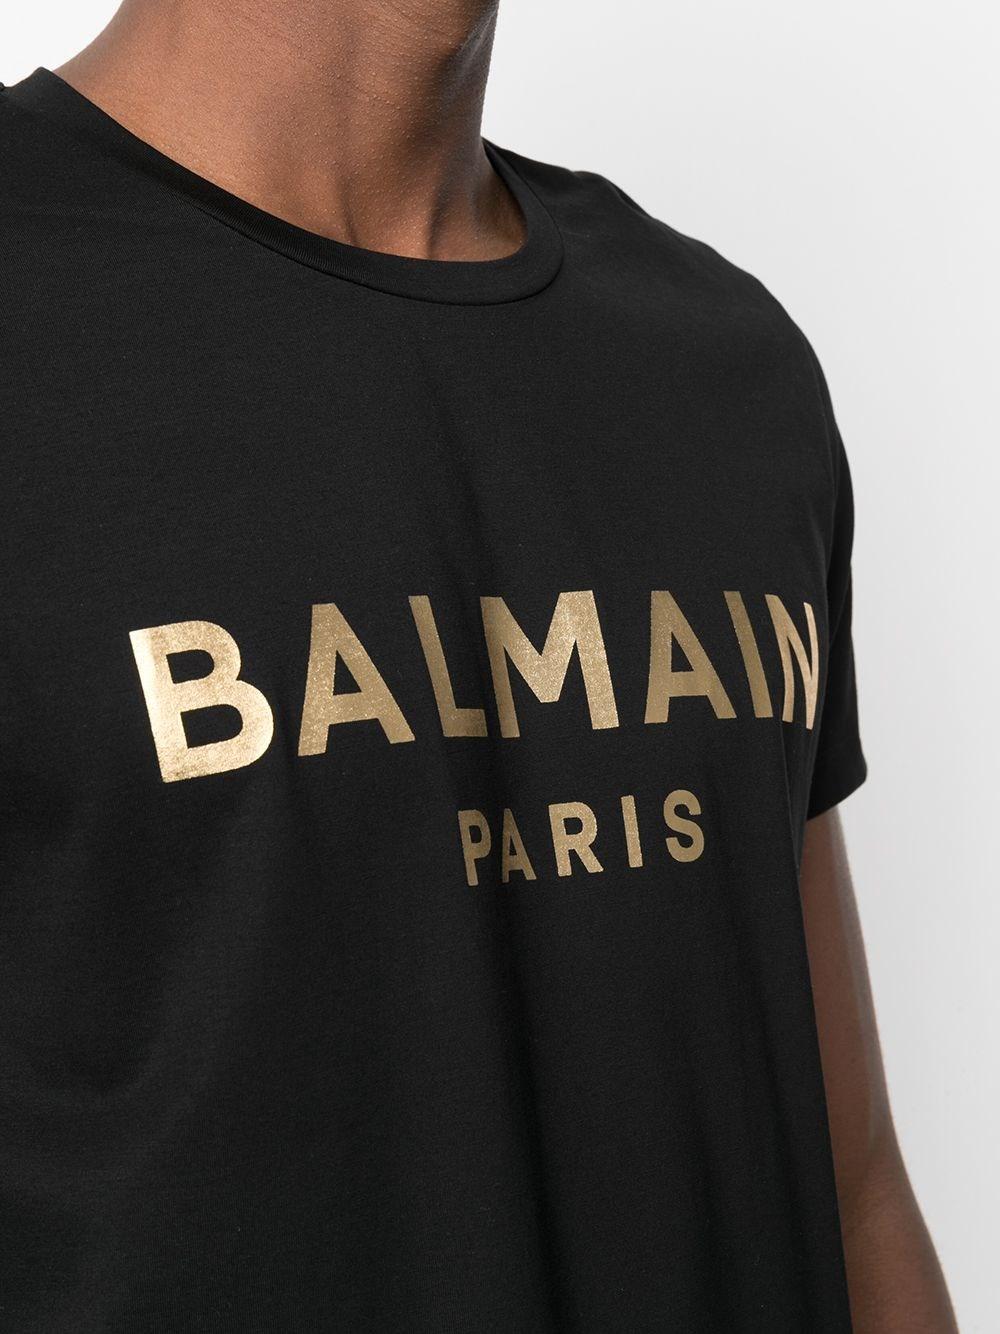 Balmain Cotton Metallic Logo Print T-shirt in Black for Men - Save 